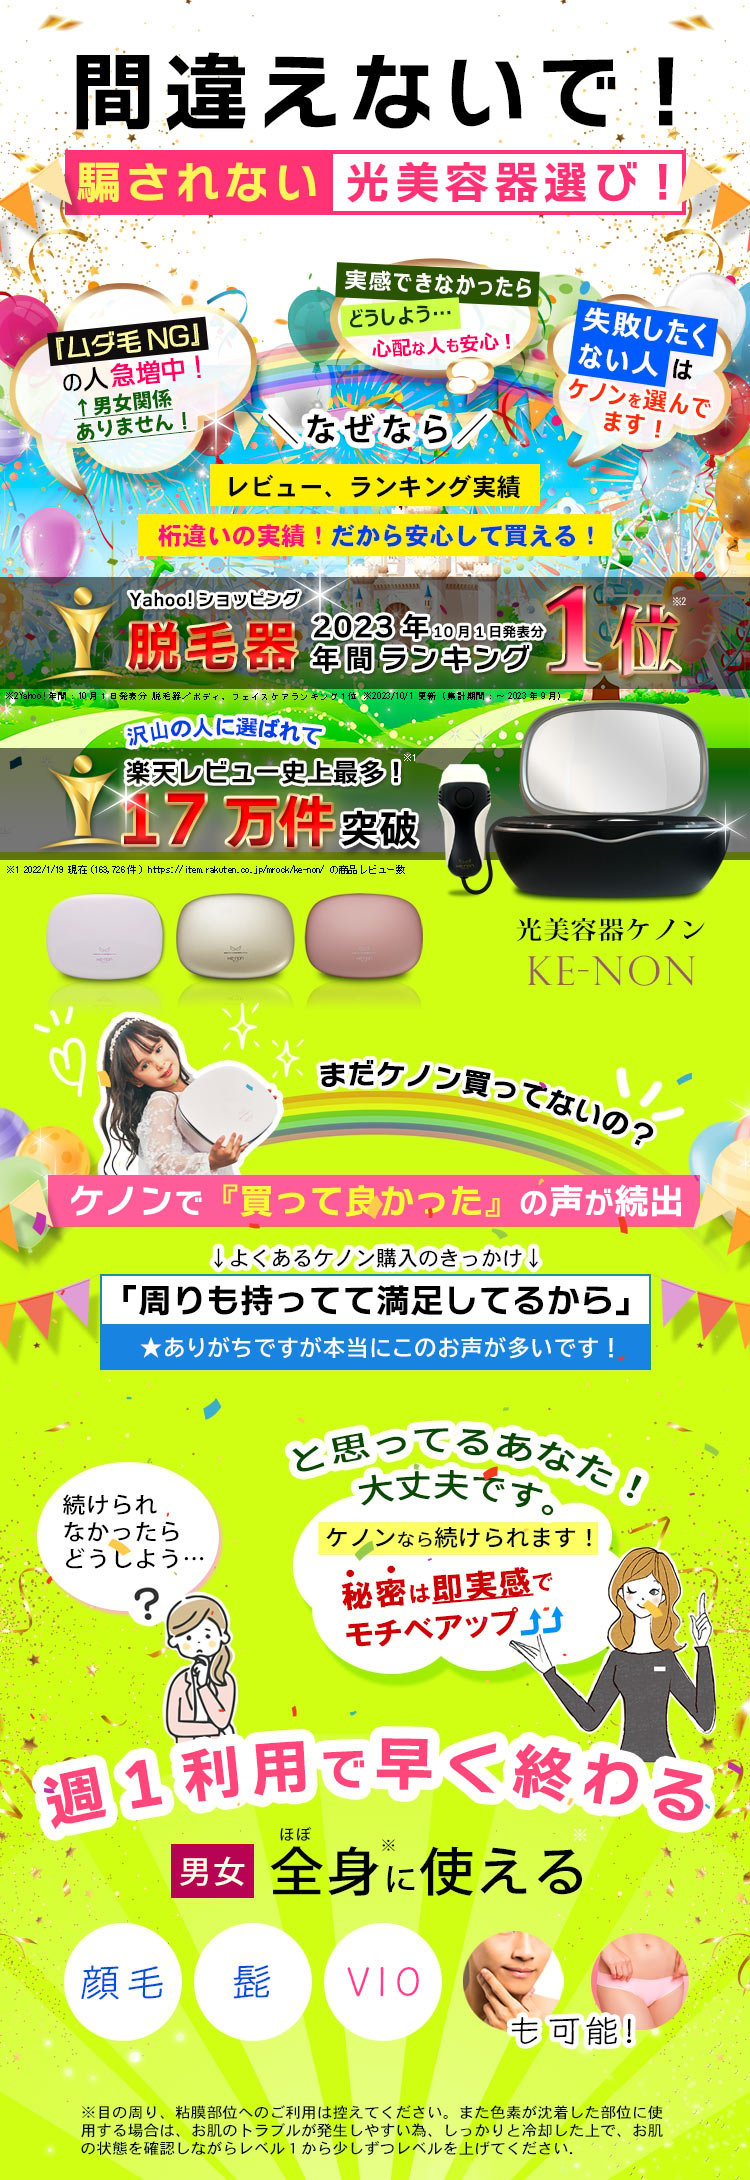 美容/健康 美容機器 ケノン KE-NON 脱毛器 ランキング1位 公式オンラインショップ 通販 光 